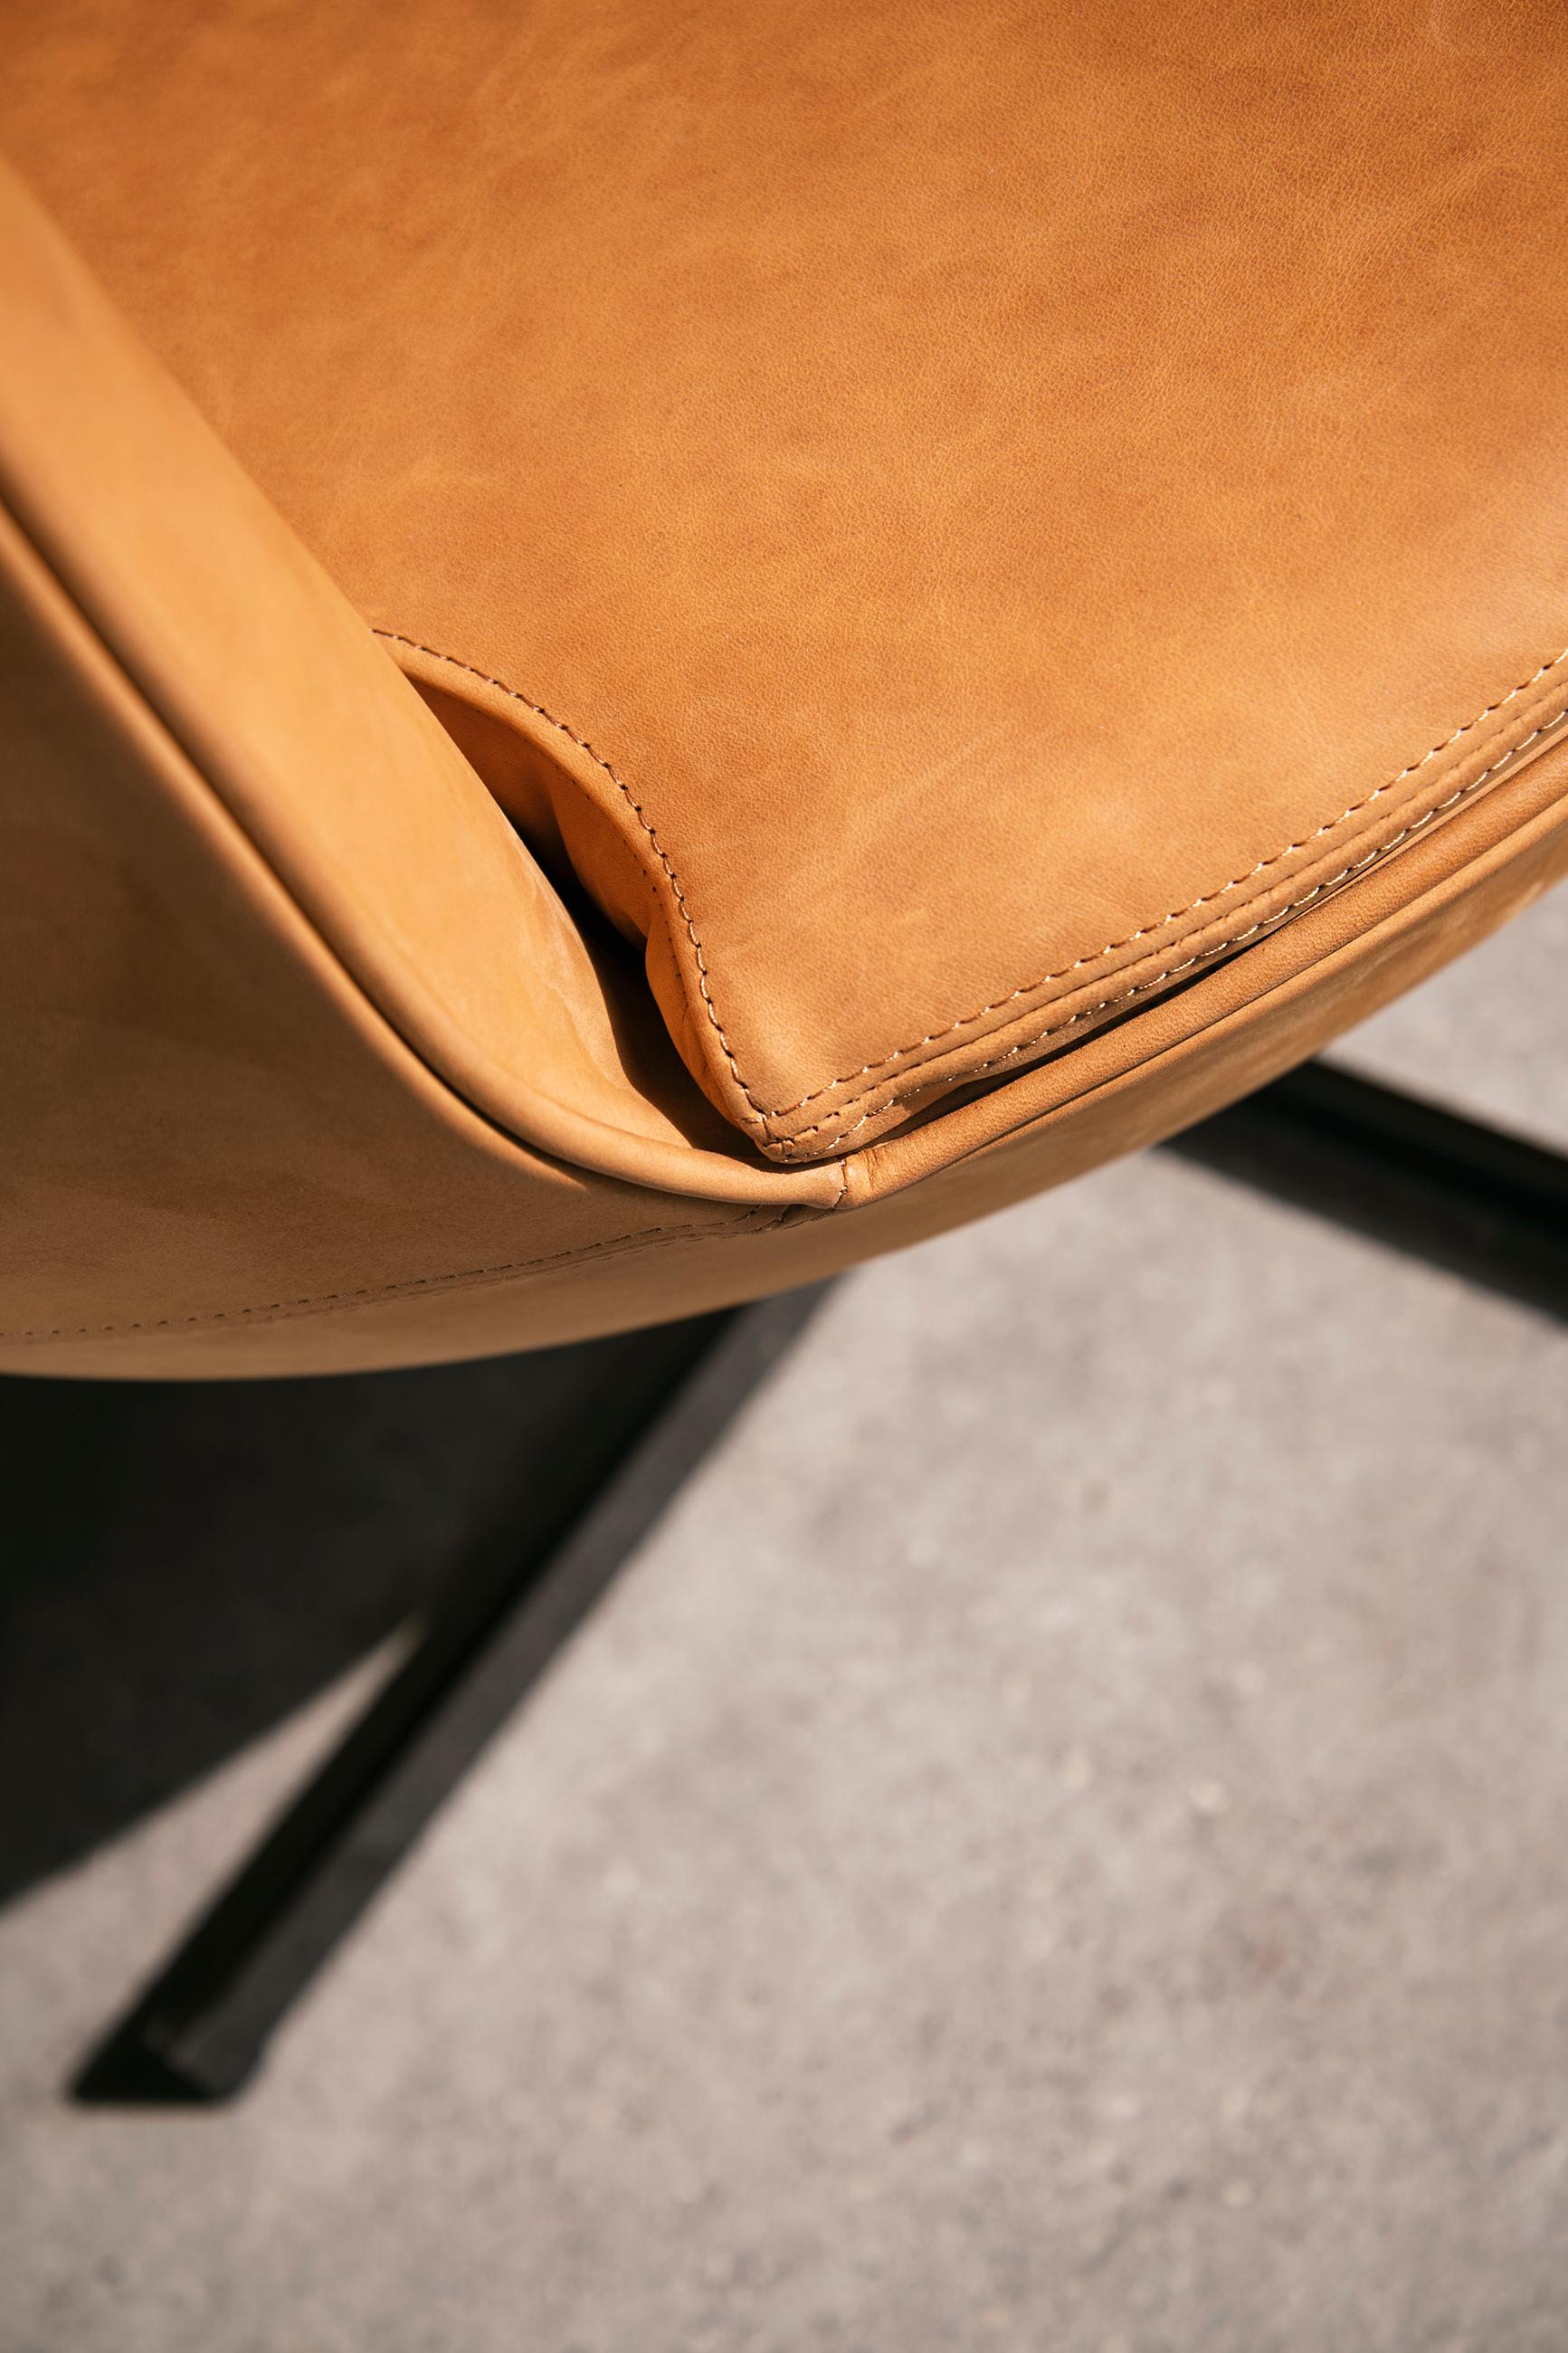 Customizable La Manufacture-Paris Calice Armchair Designed by Patrick Norguet For Sale 3